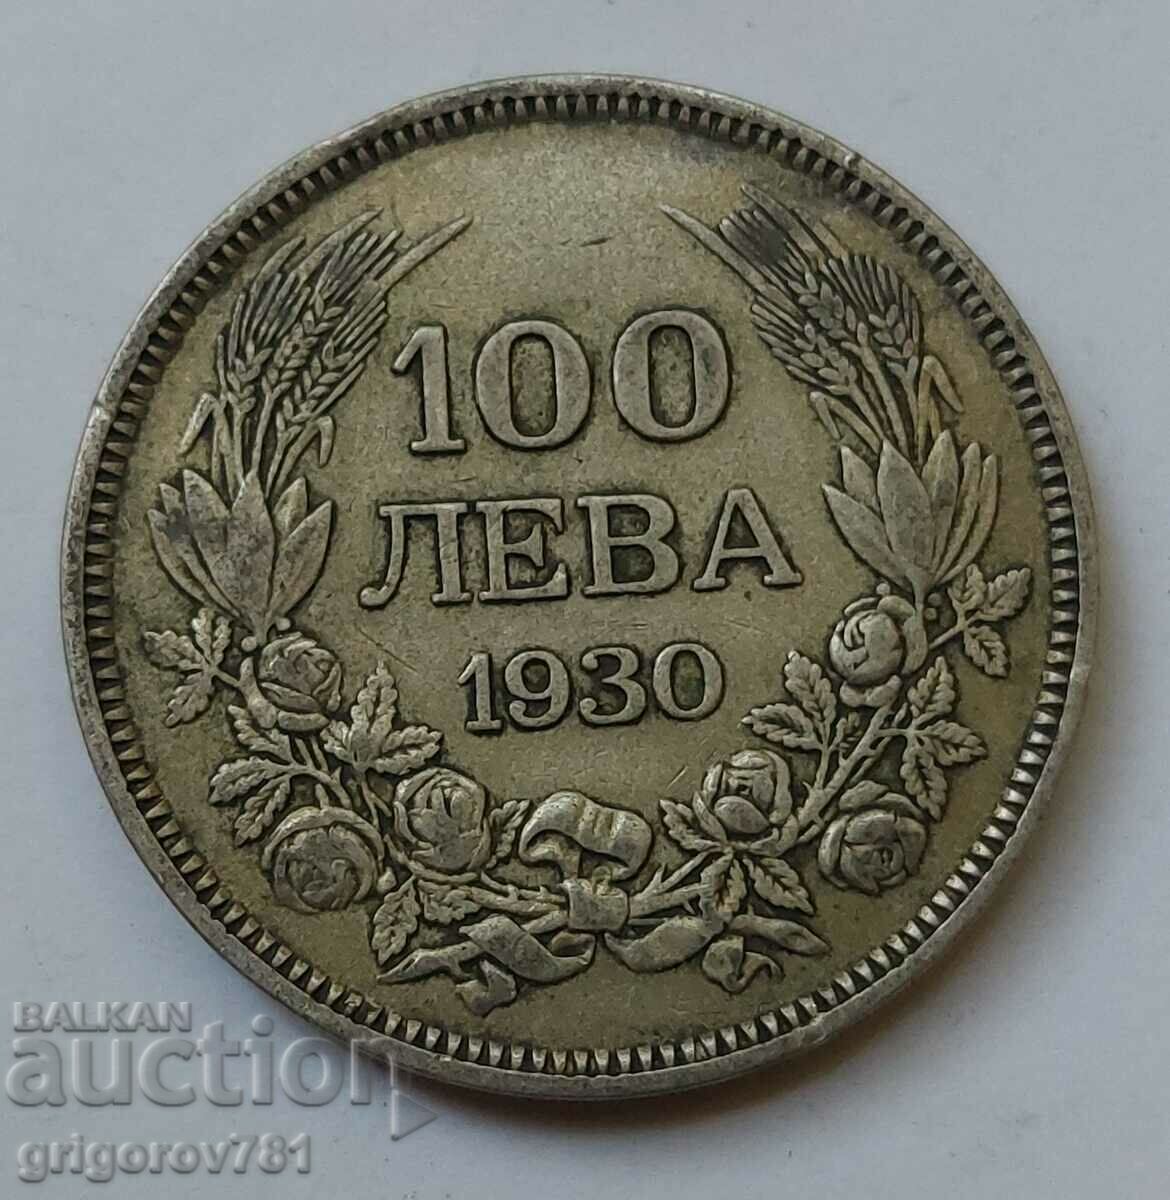 Ασήμι 100 λέβα Βουλγαρία 1930 - ασημένιο νόμισμα #48